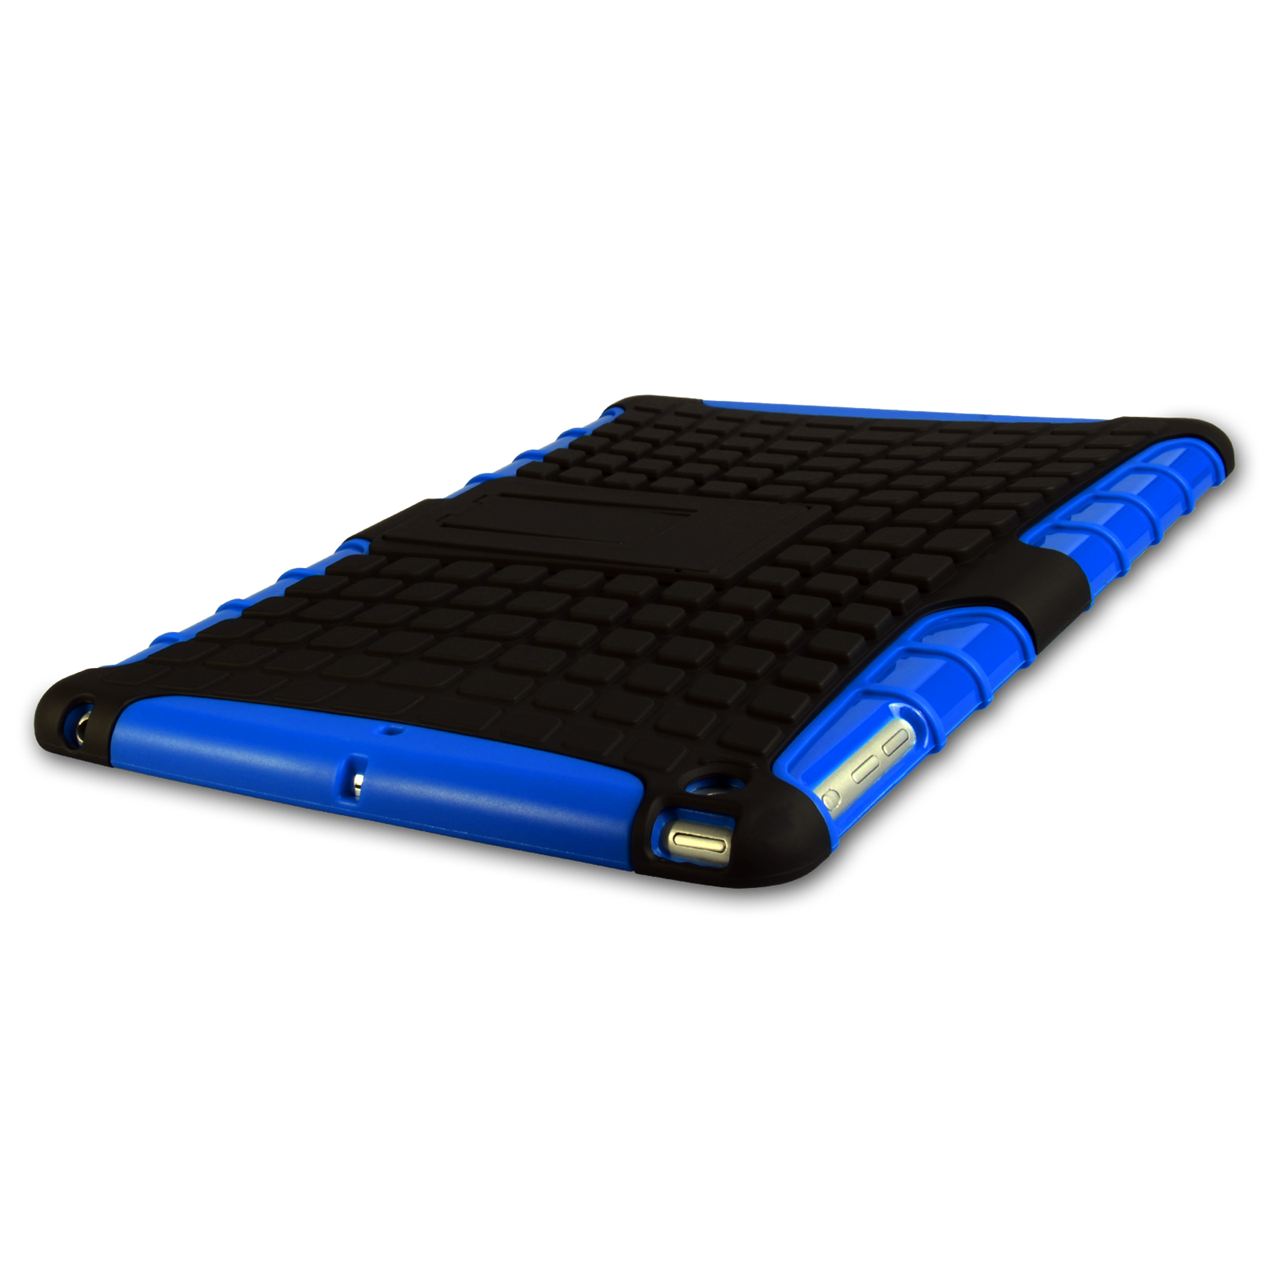 Caseflex iPad Air Tough Stand Cover - Blue